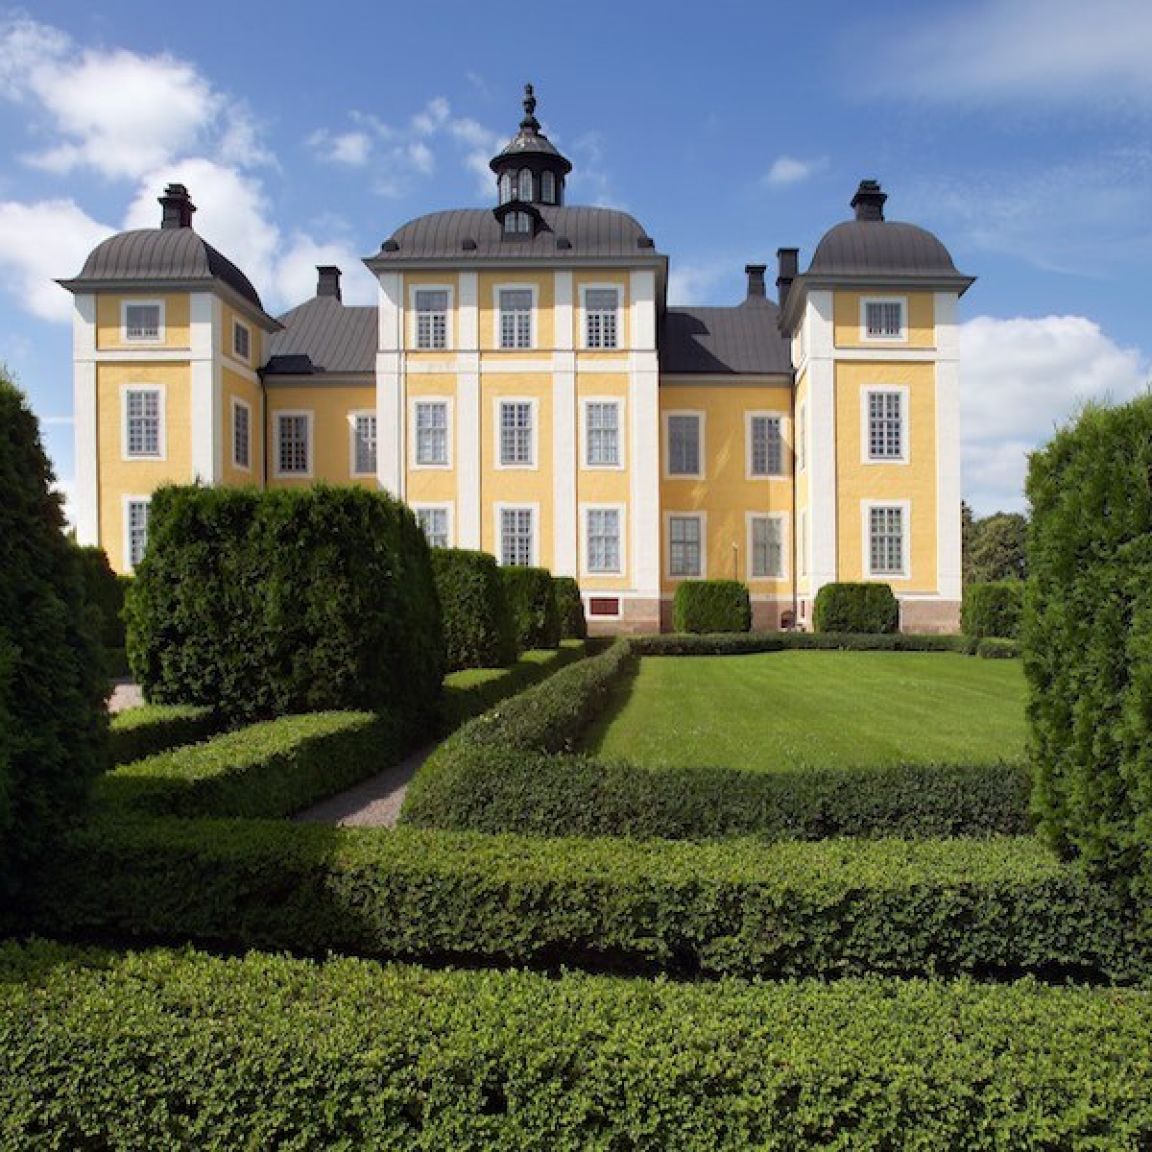 Visit vastmanland stromsholms slott exterior slotts parken